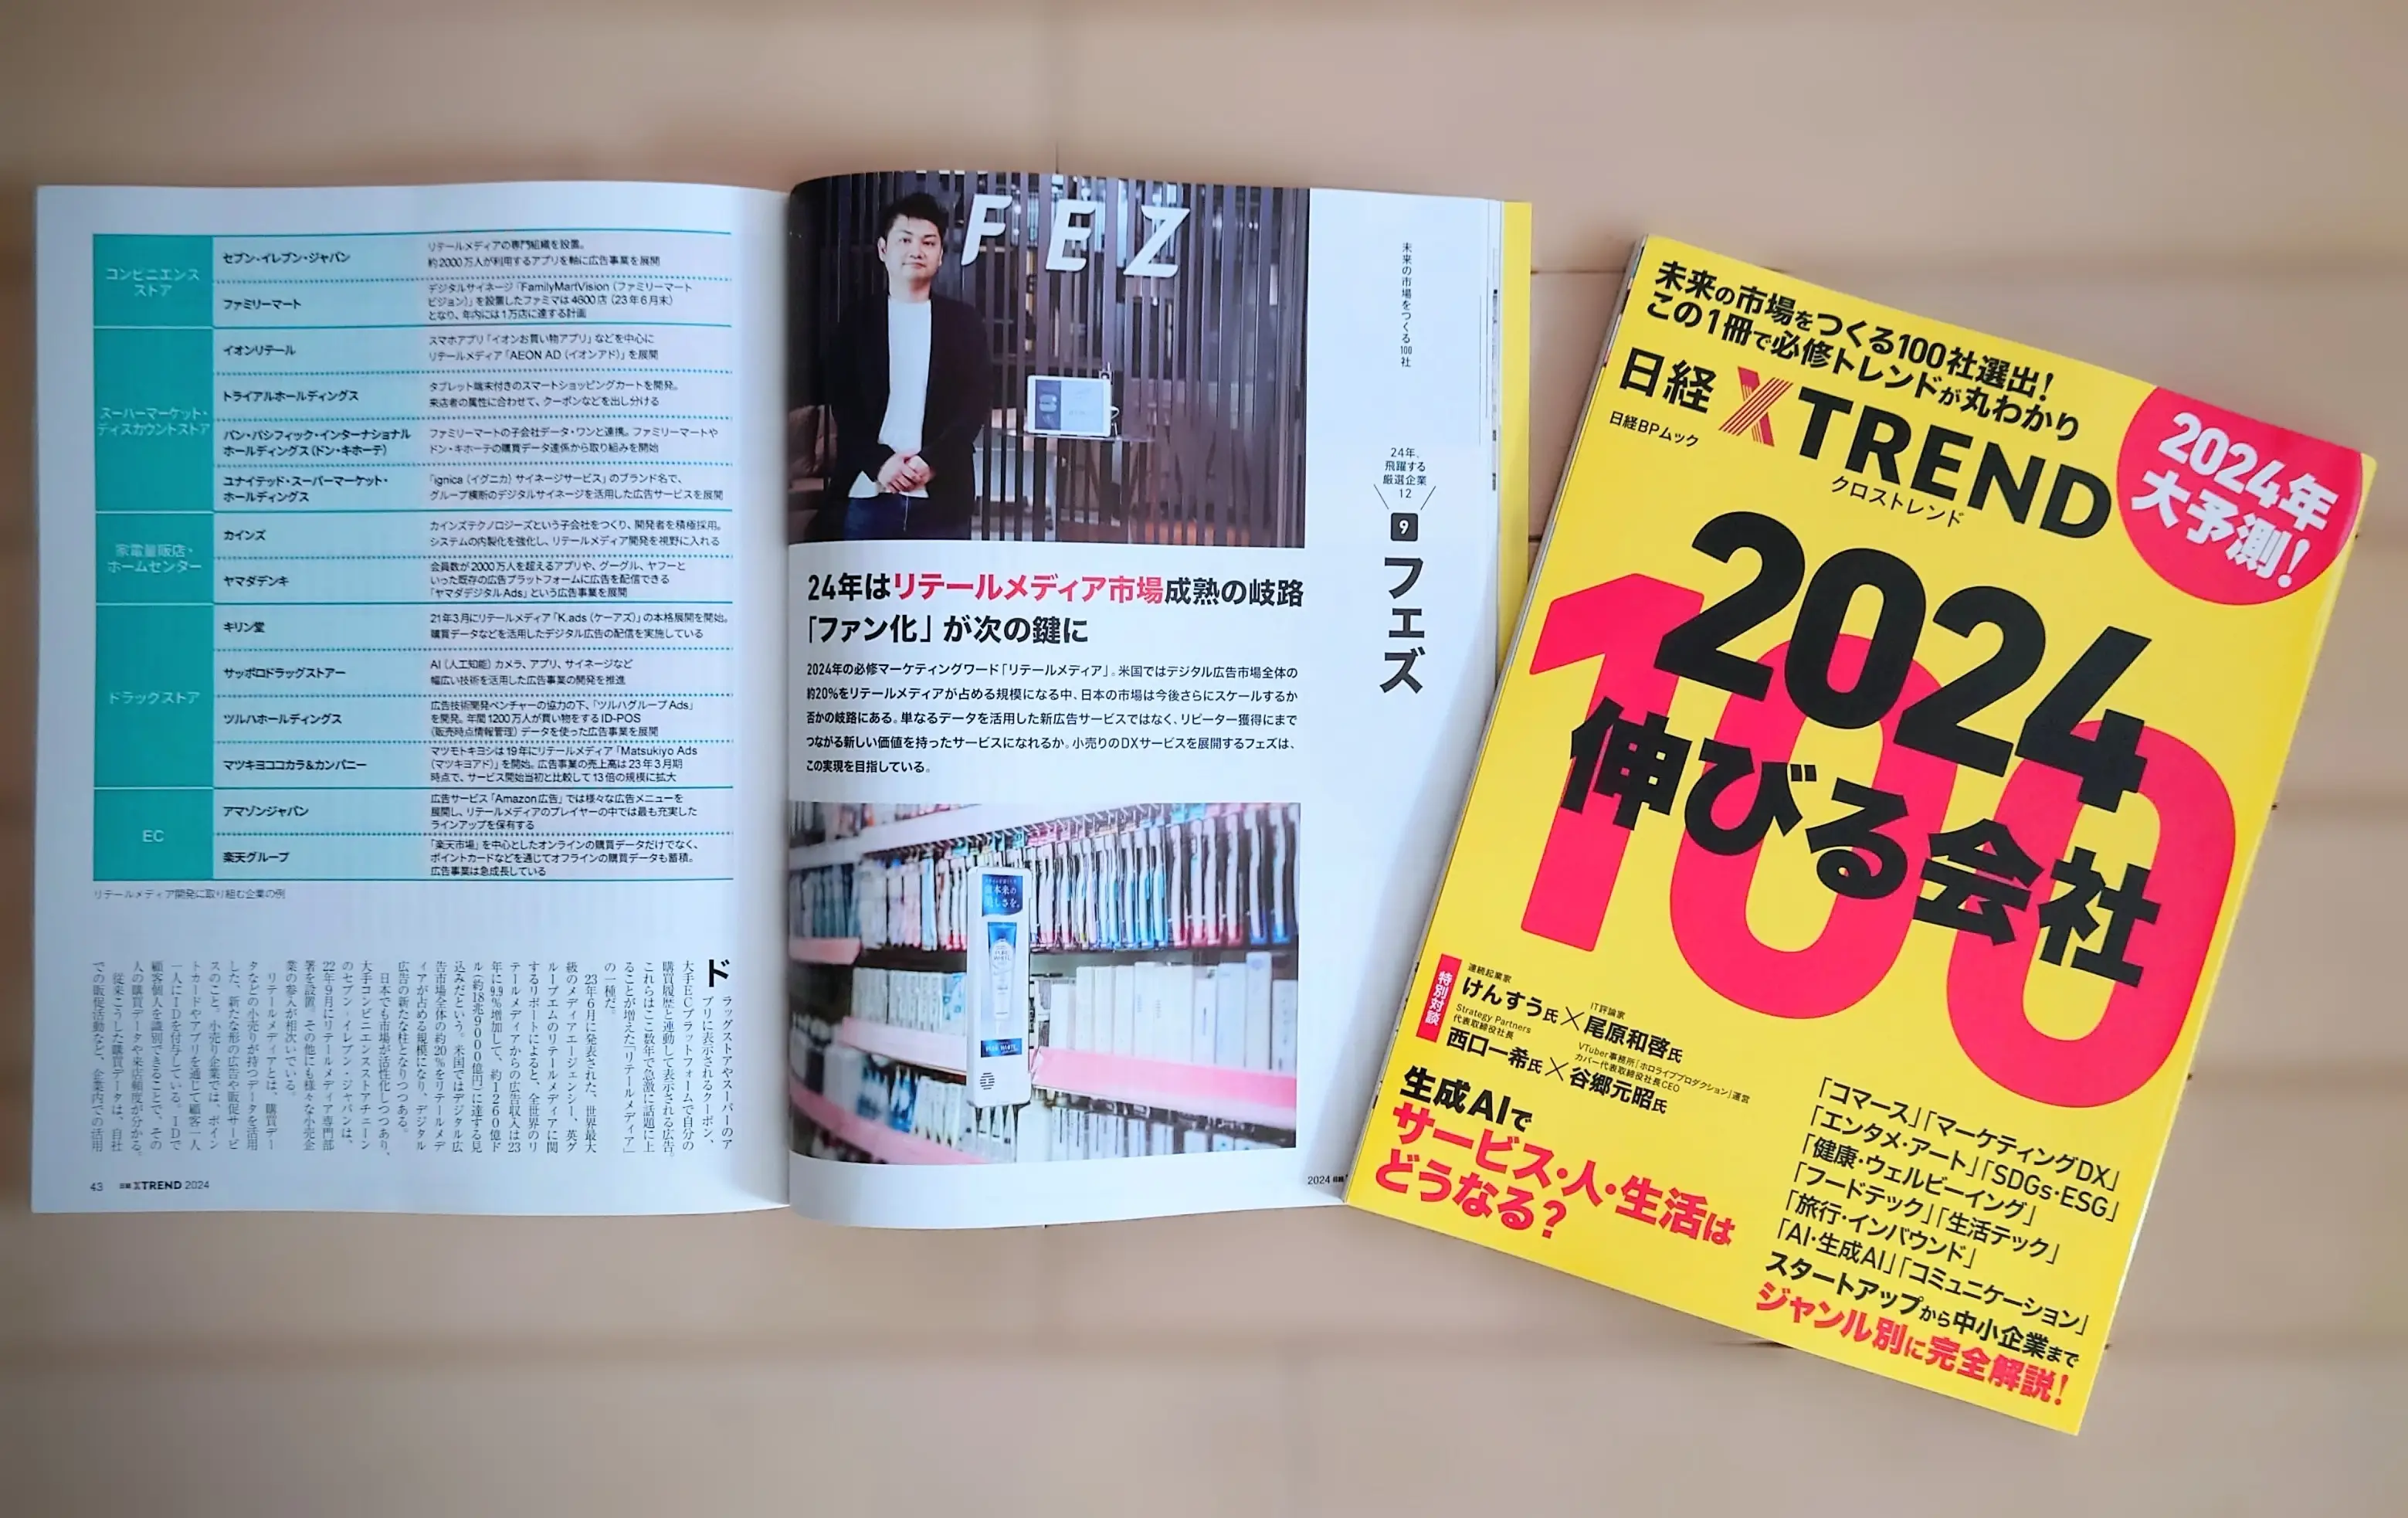 ムック『2024 伸びる会社100』（日経クロストレンド編、日経BP）にて、飛躍する厳選企業としてフェズが掲載されました